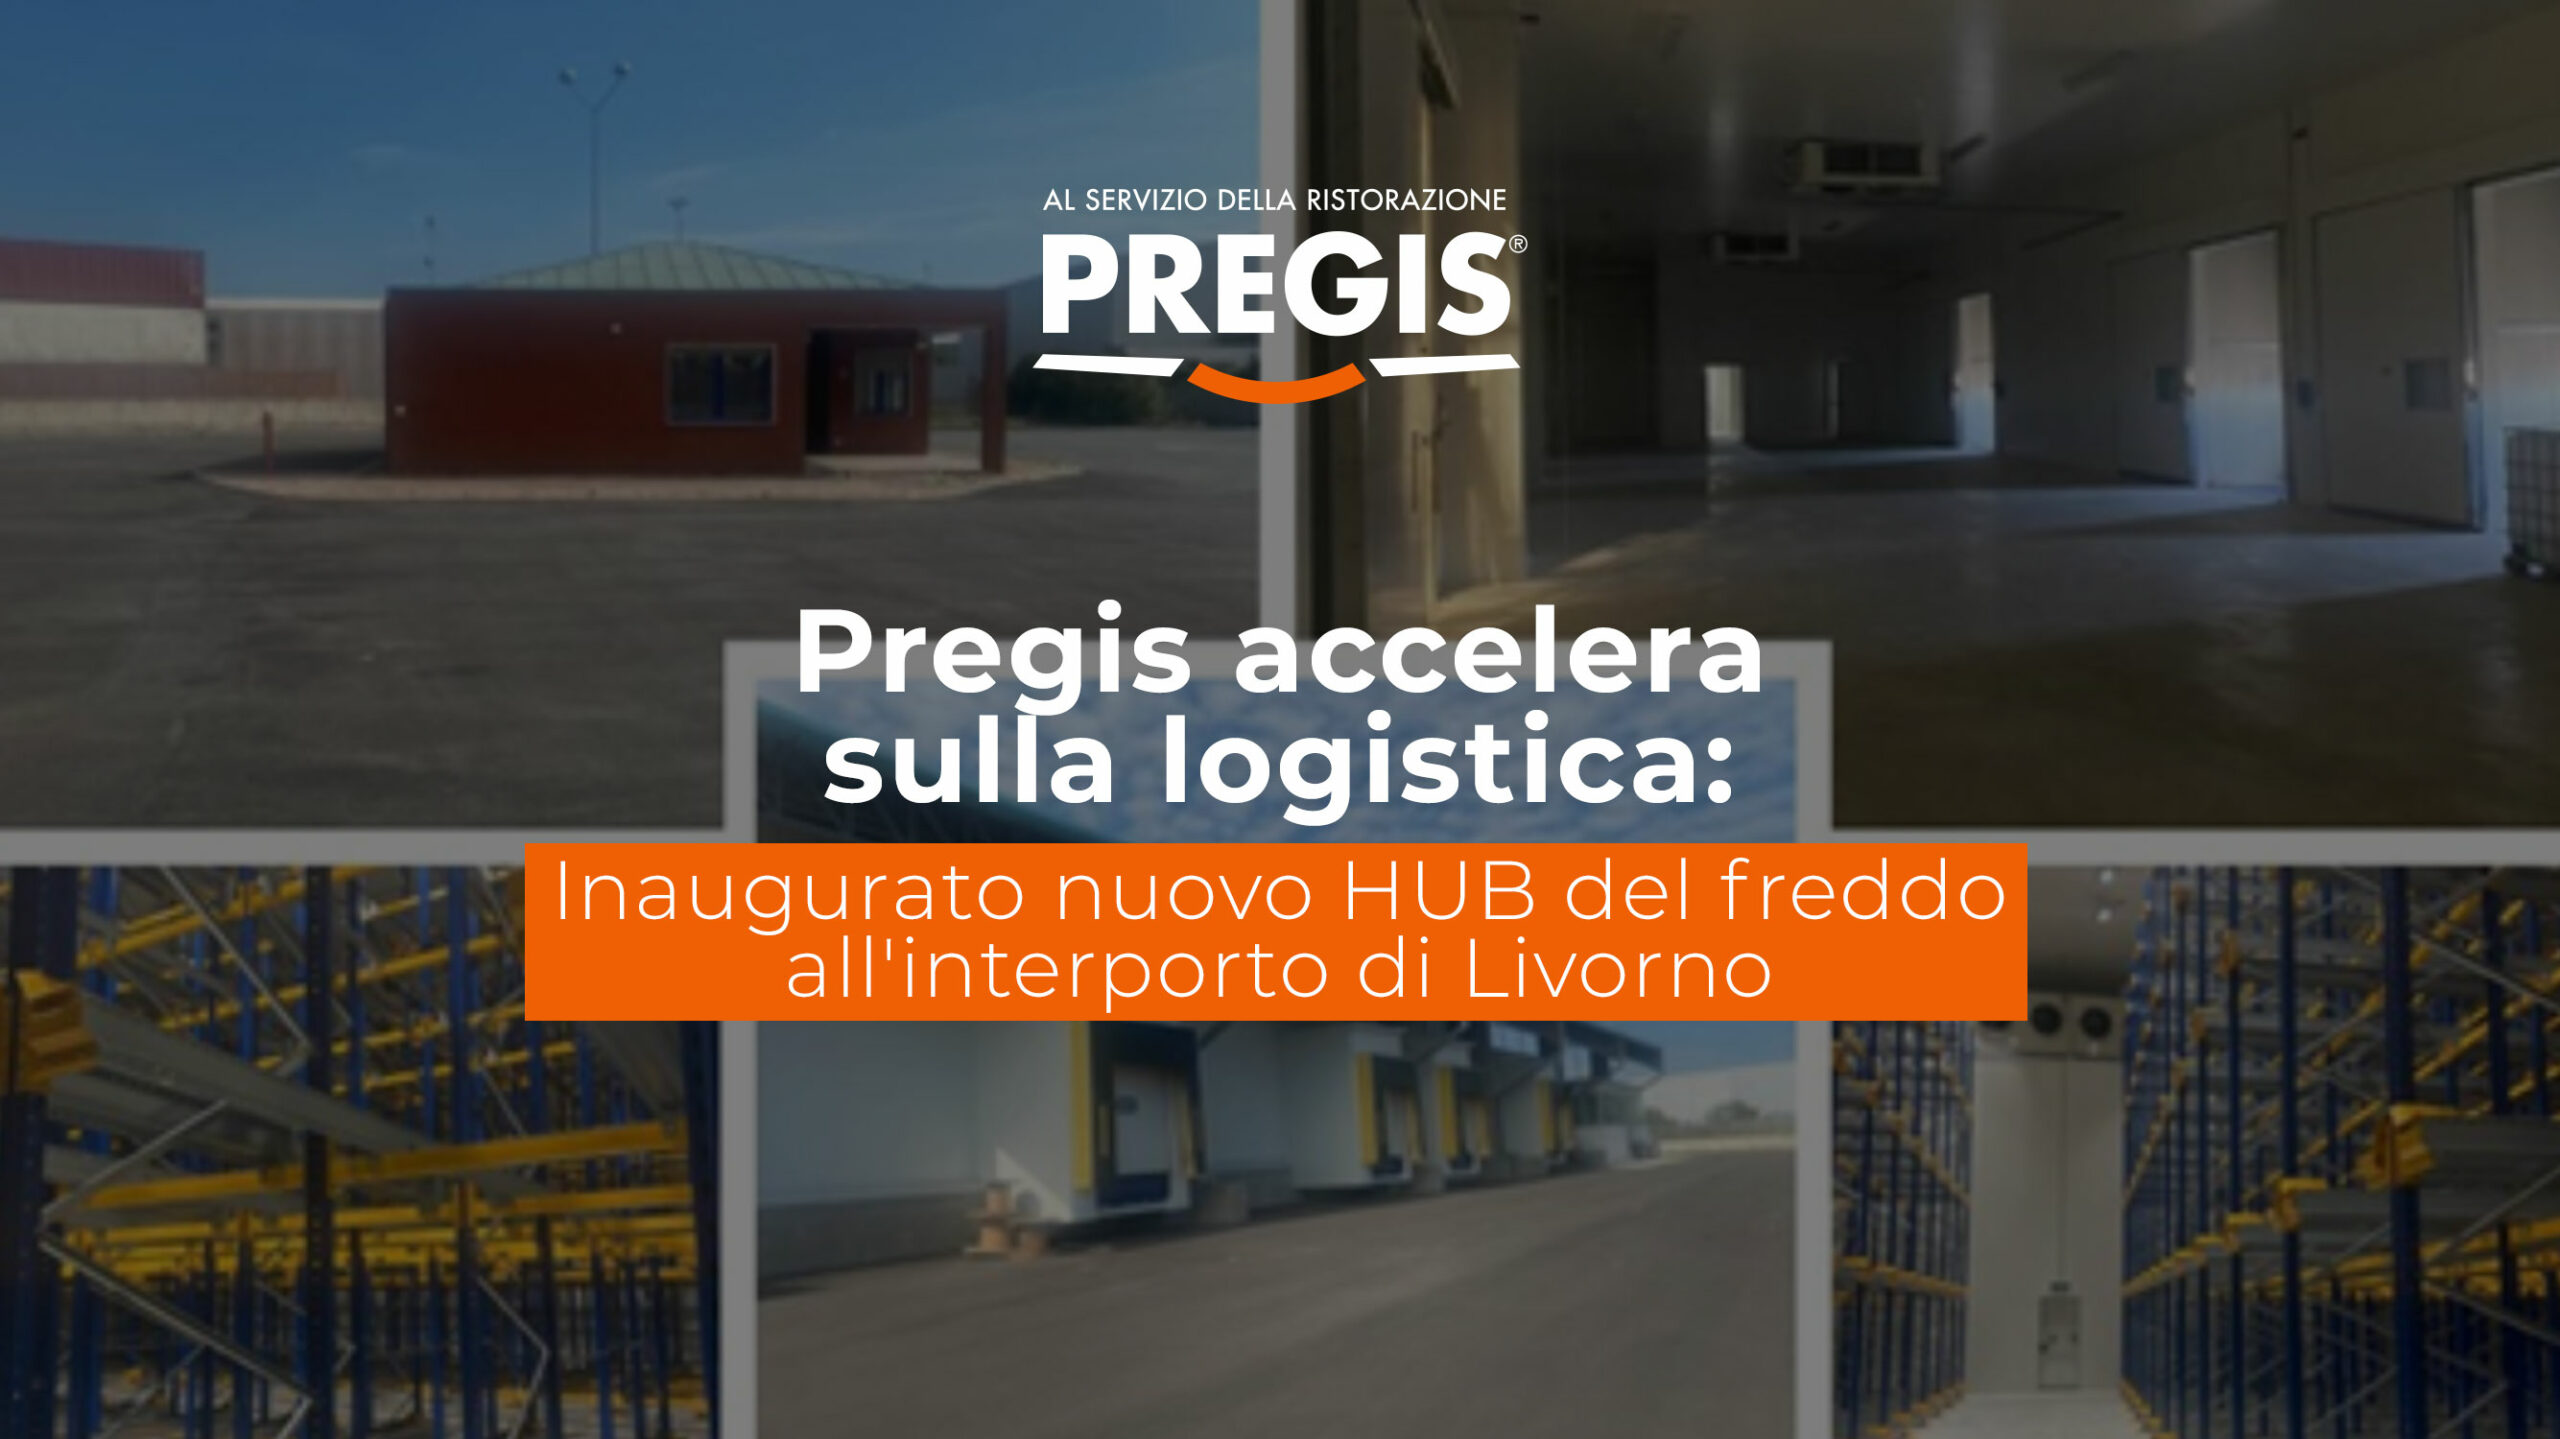 Pregis accelera sulla logistica: inaugurato nuovo HUB del freddo all’interporto di Livorno